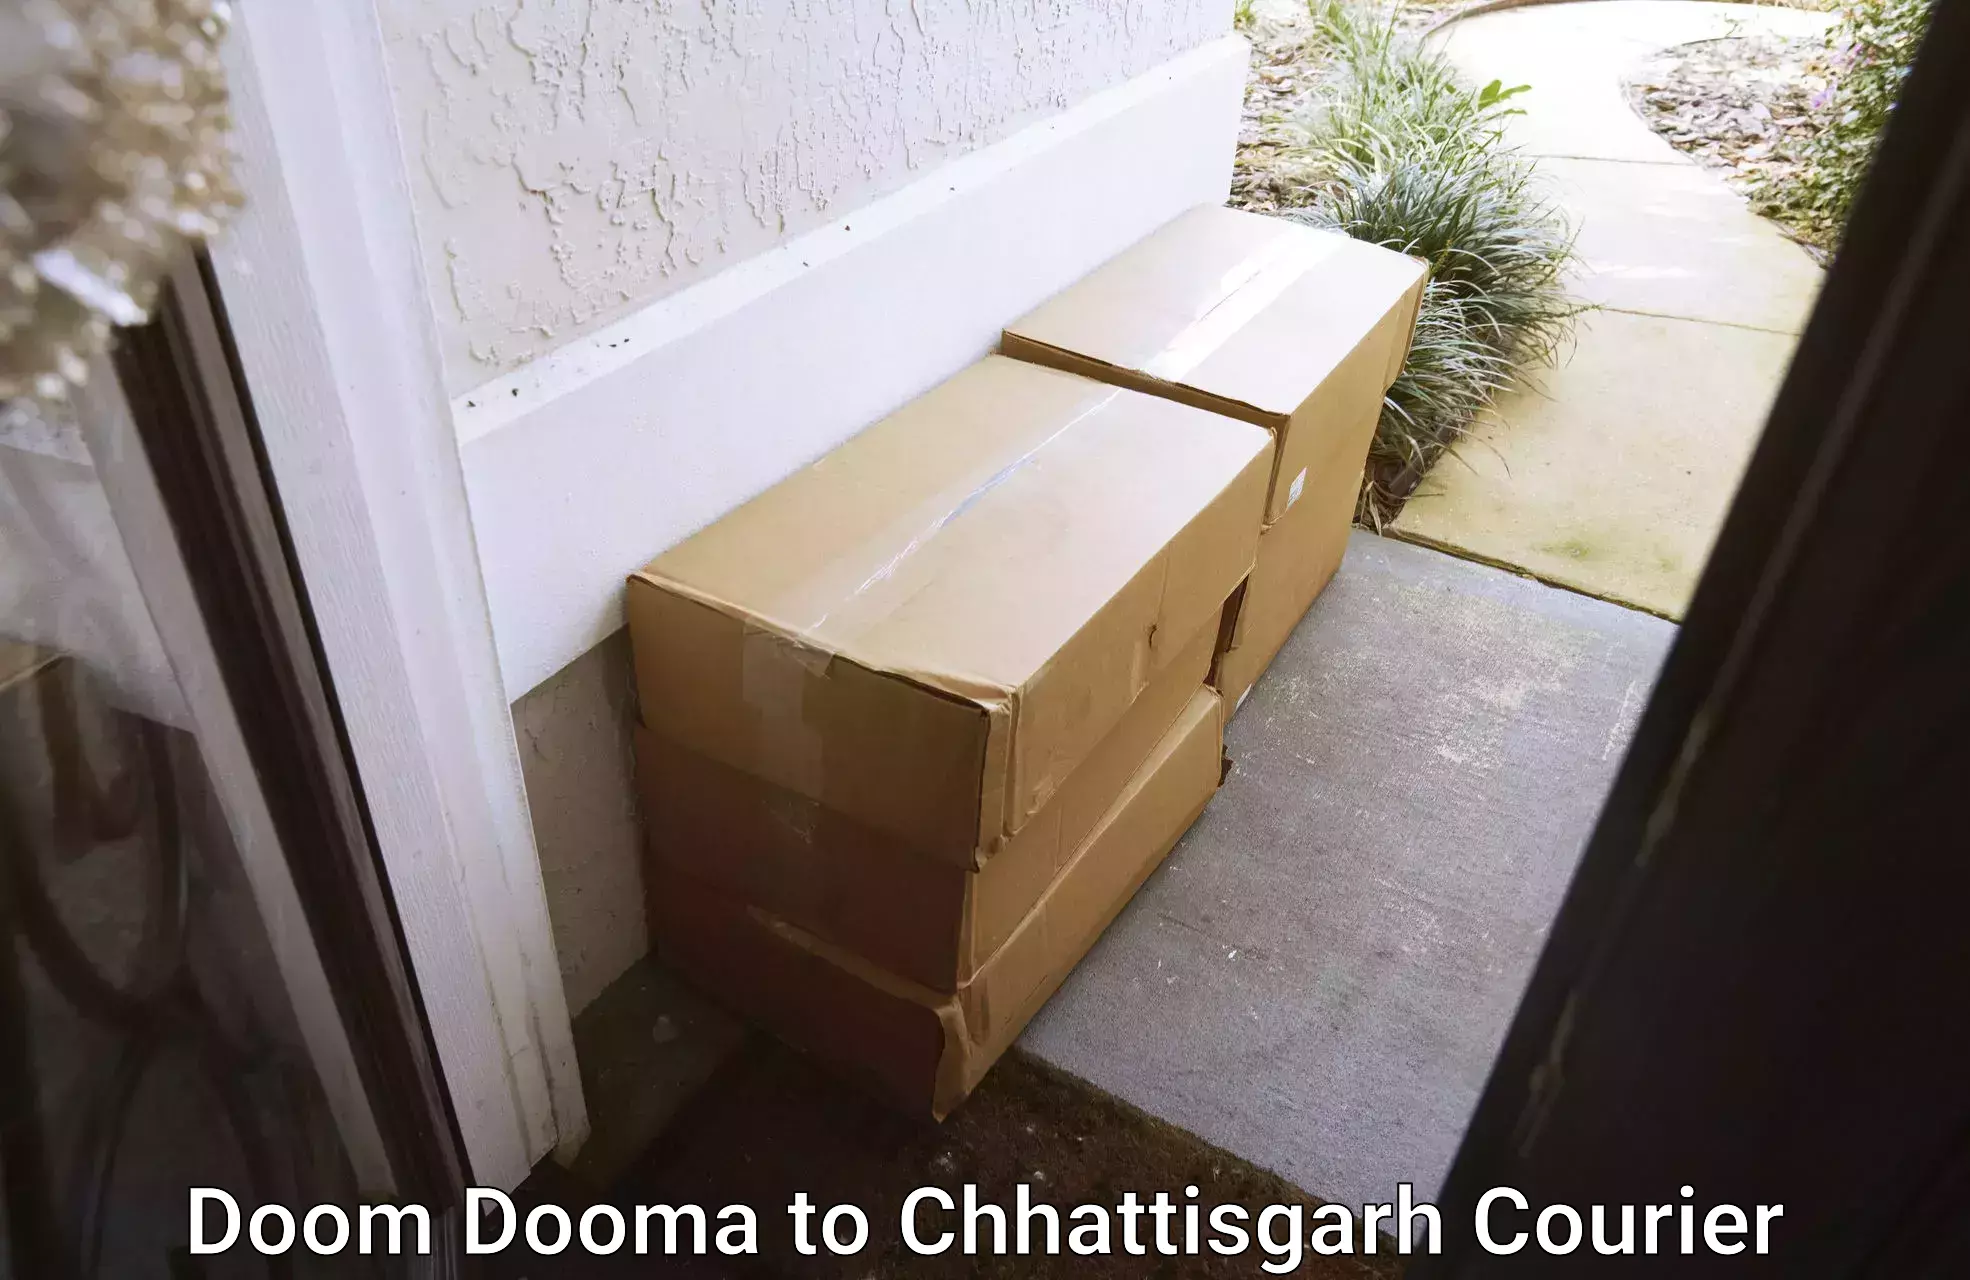 Flexible parcel services Doom Dooma to Chirimiri